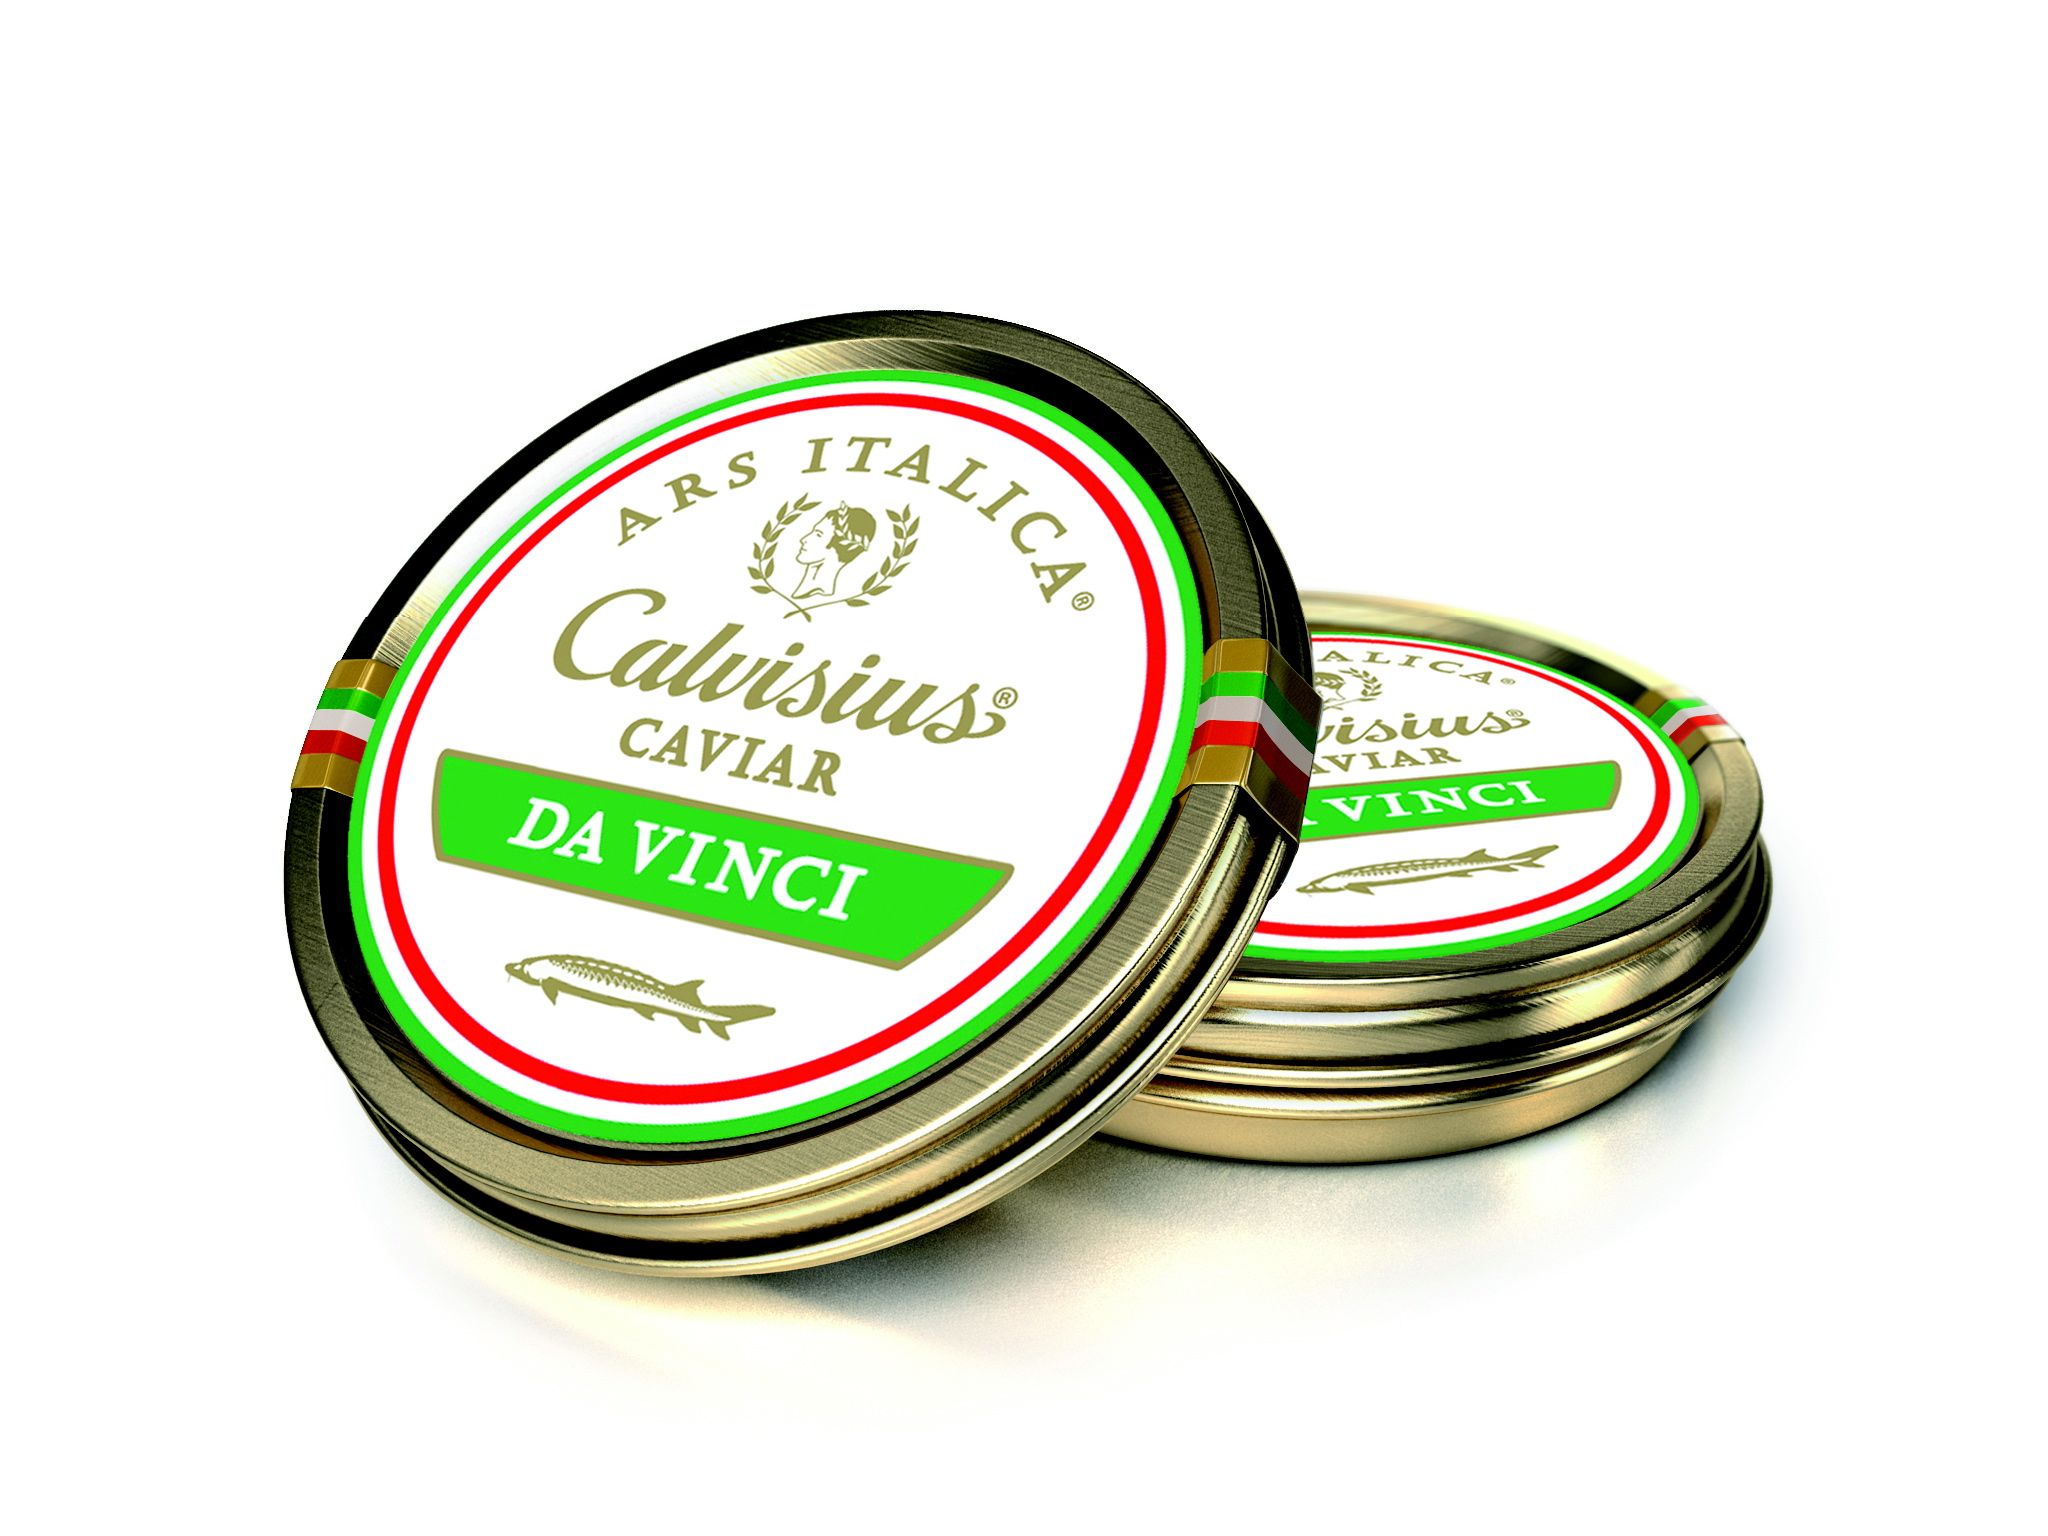 Caviar Calvisius da Vinci 100g